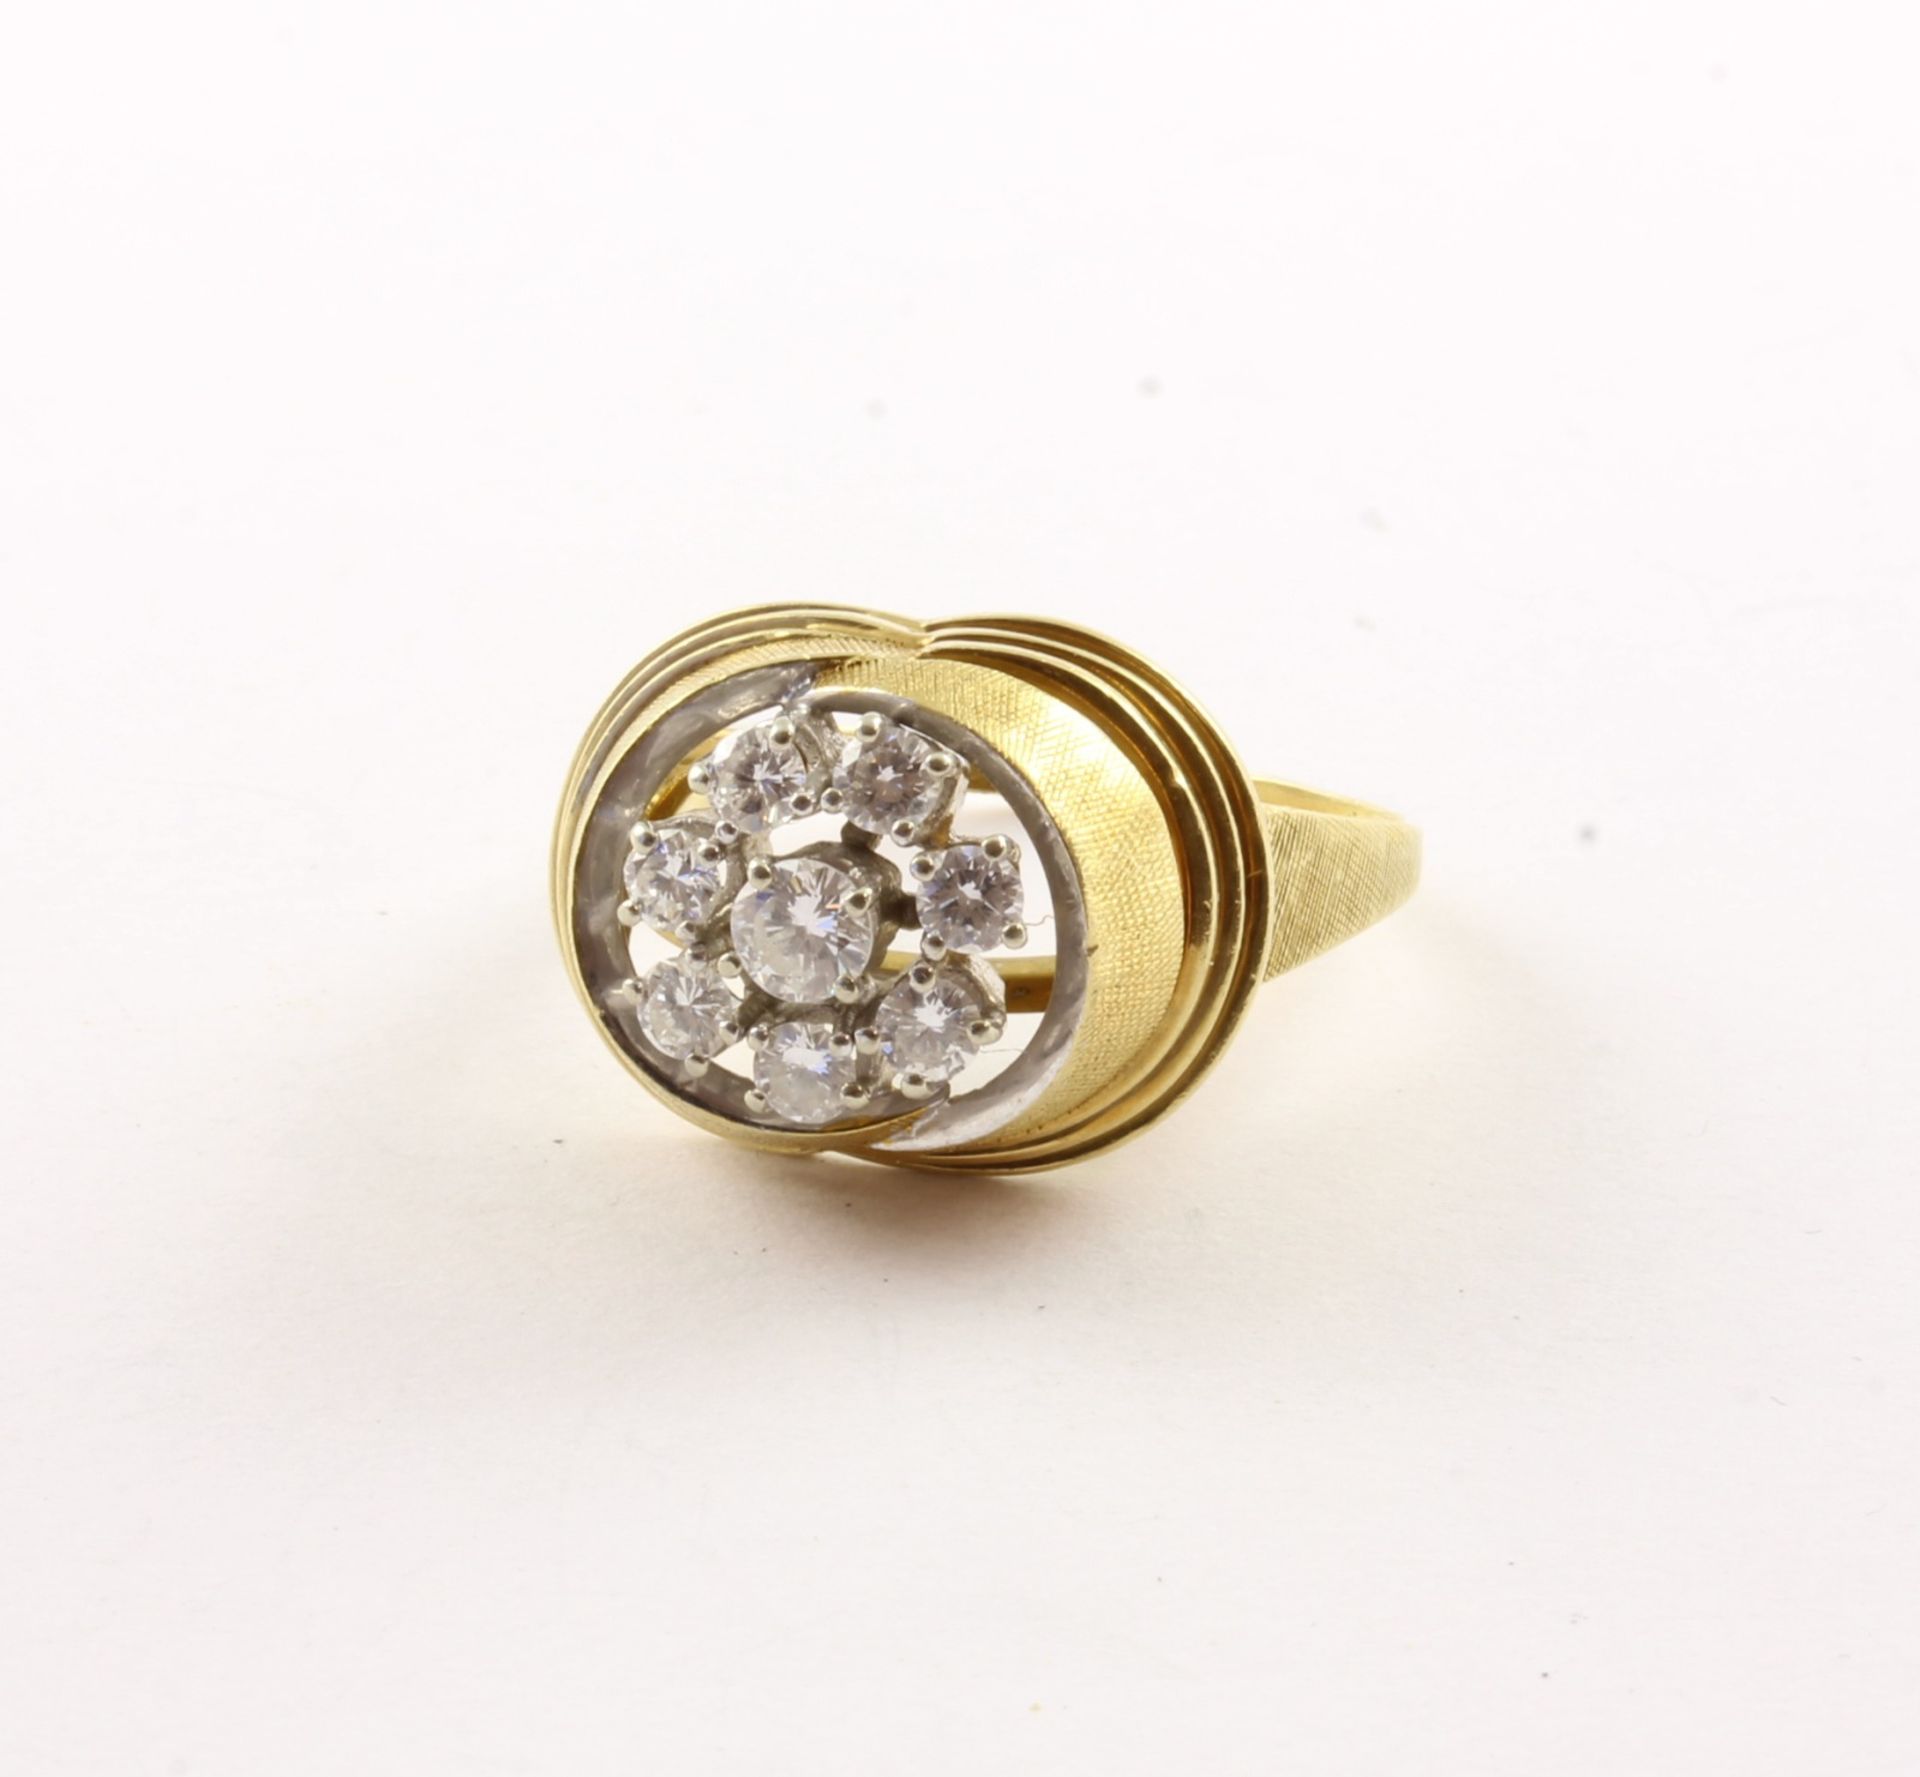 BRILLLANT-RING, 585/ooo Gelbgold, besetzt mit Brillanten und Diamanten von zusammen ca. 0,50 ct., R